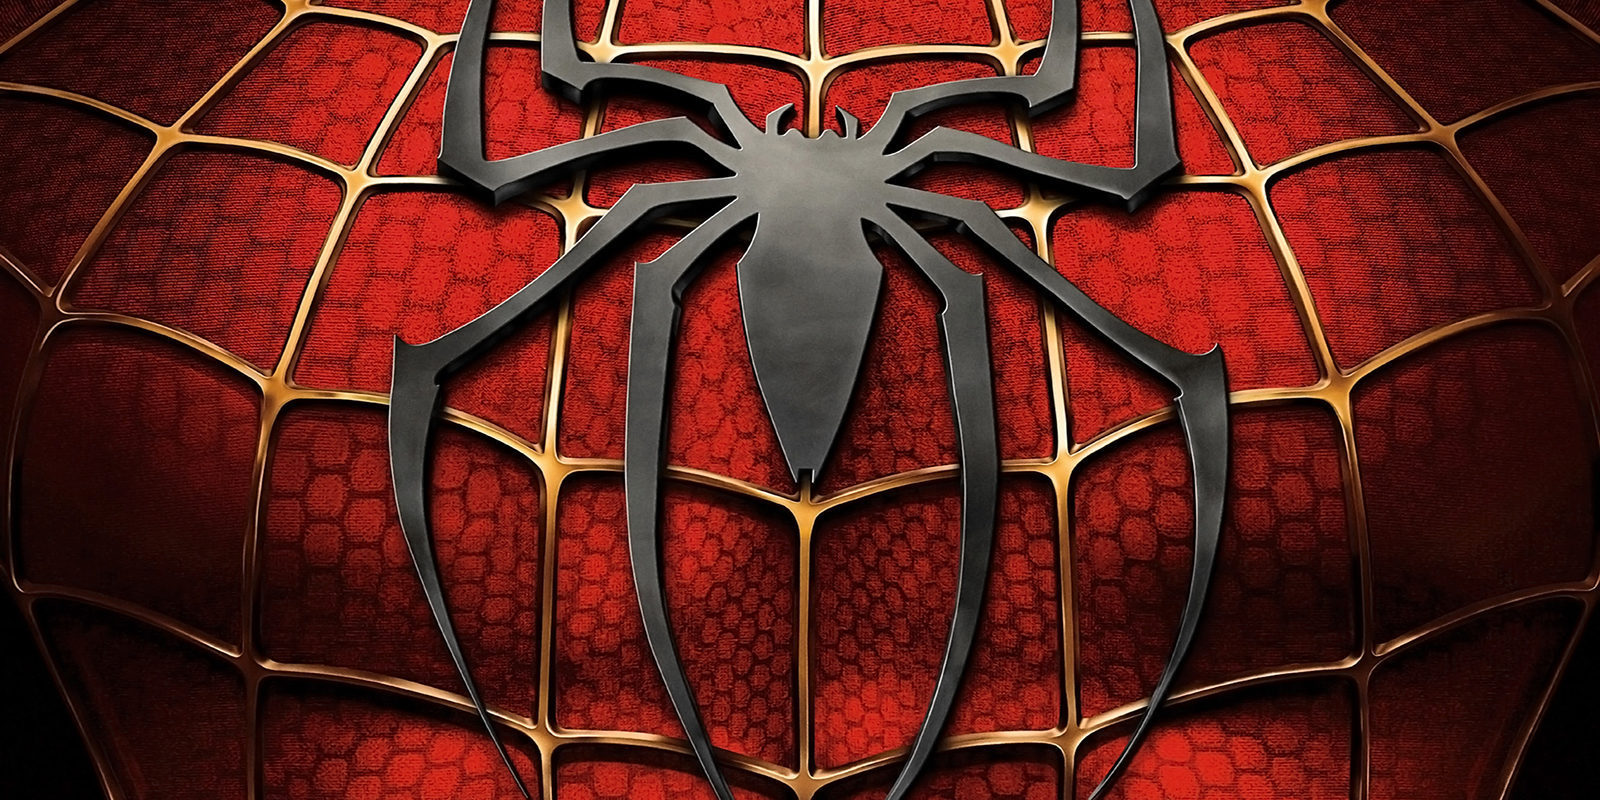 El juego de 'Spiderman' para PS4 será independiente a la nueva película